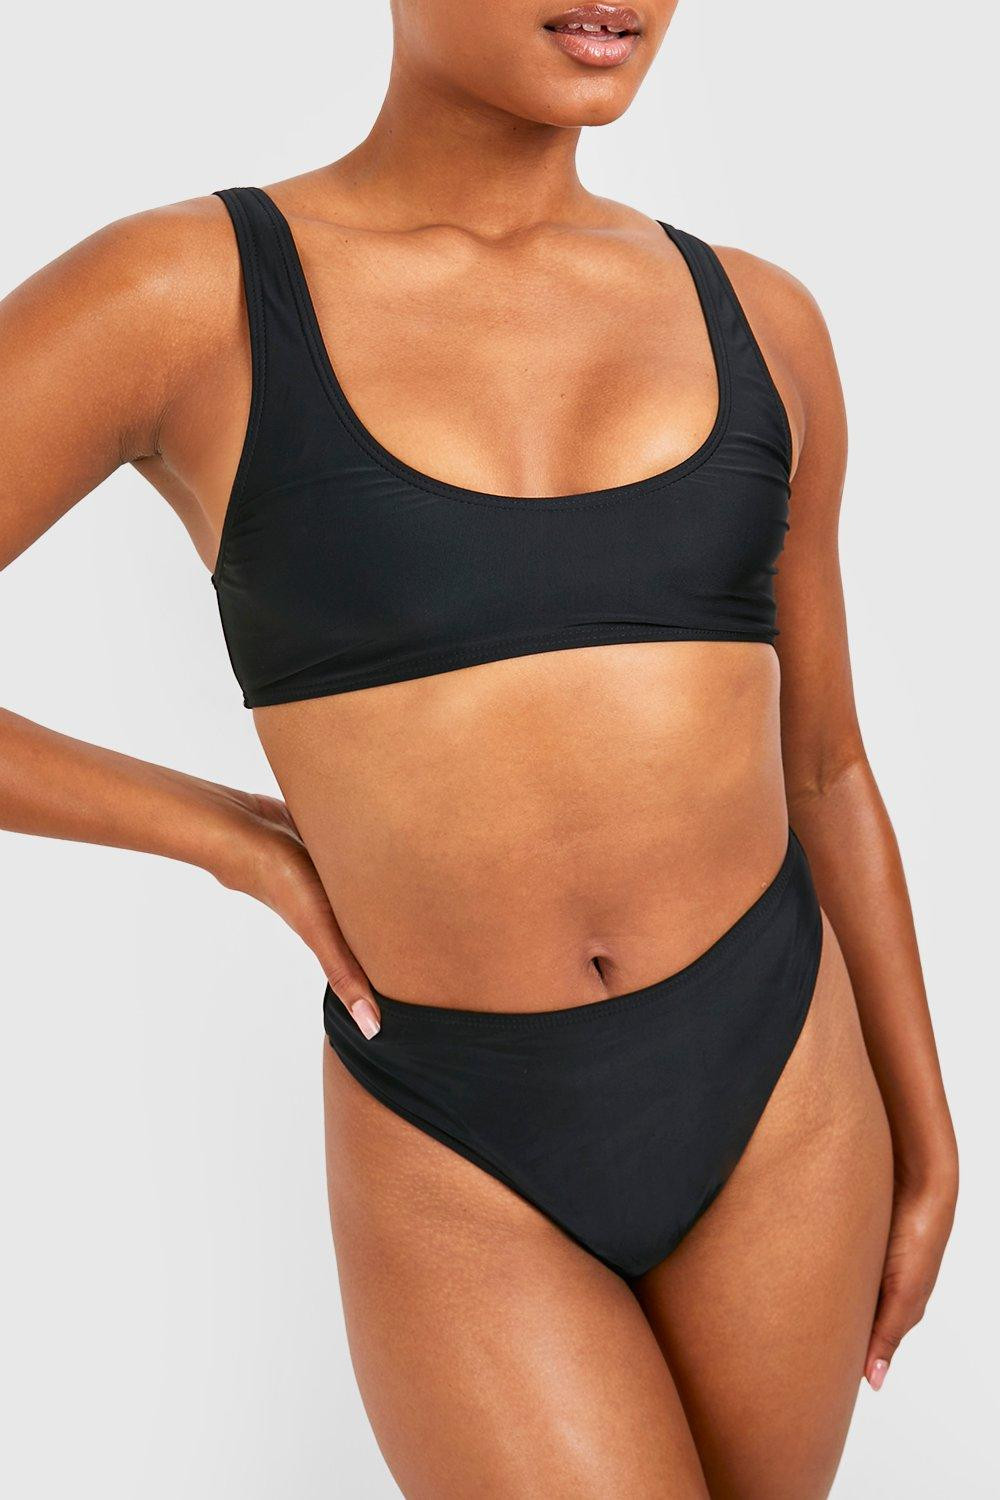 czarny dwuczęściowy strój kąpielowy komplet bikini